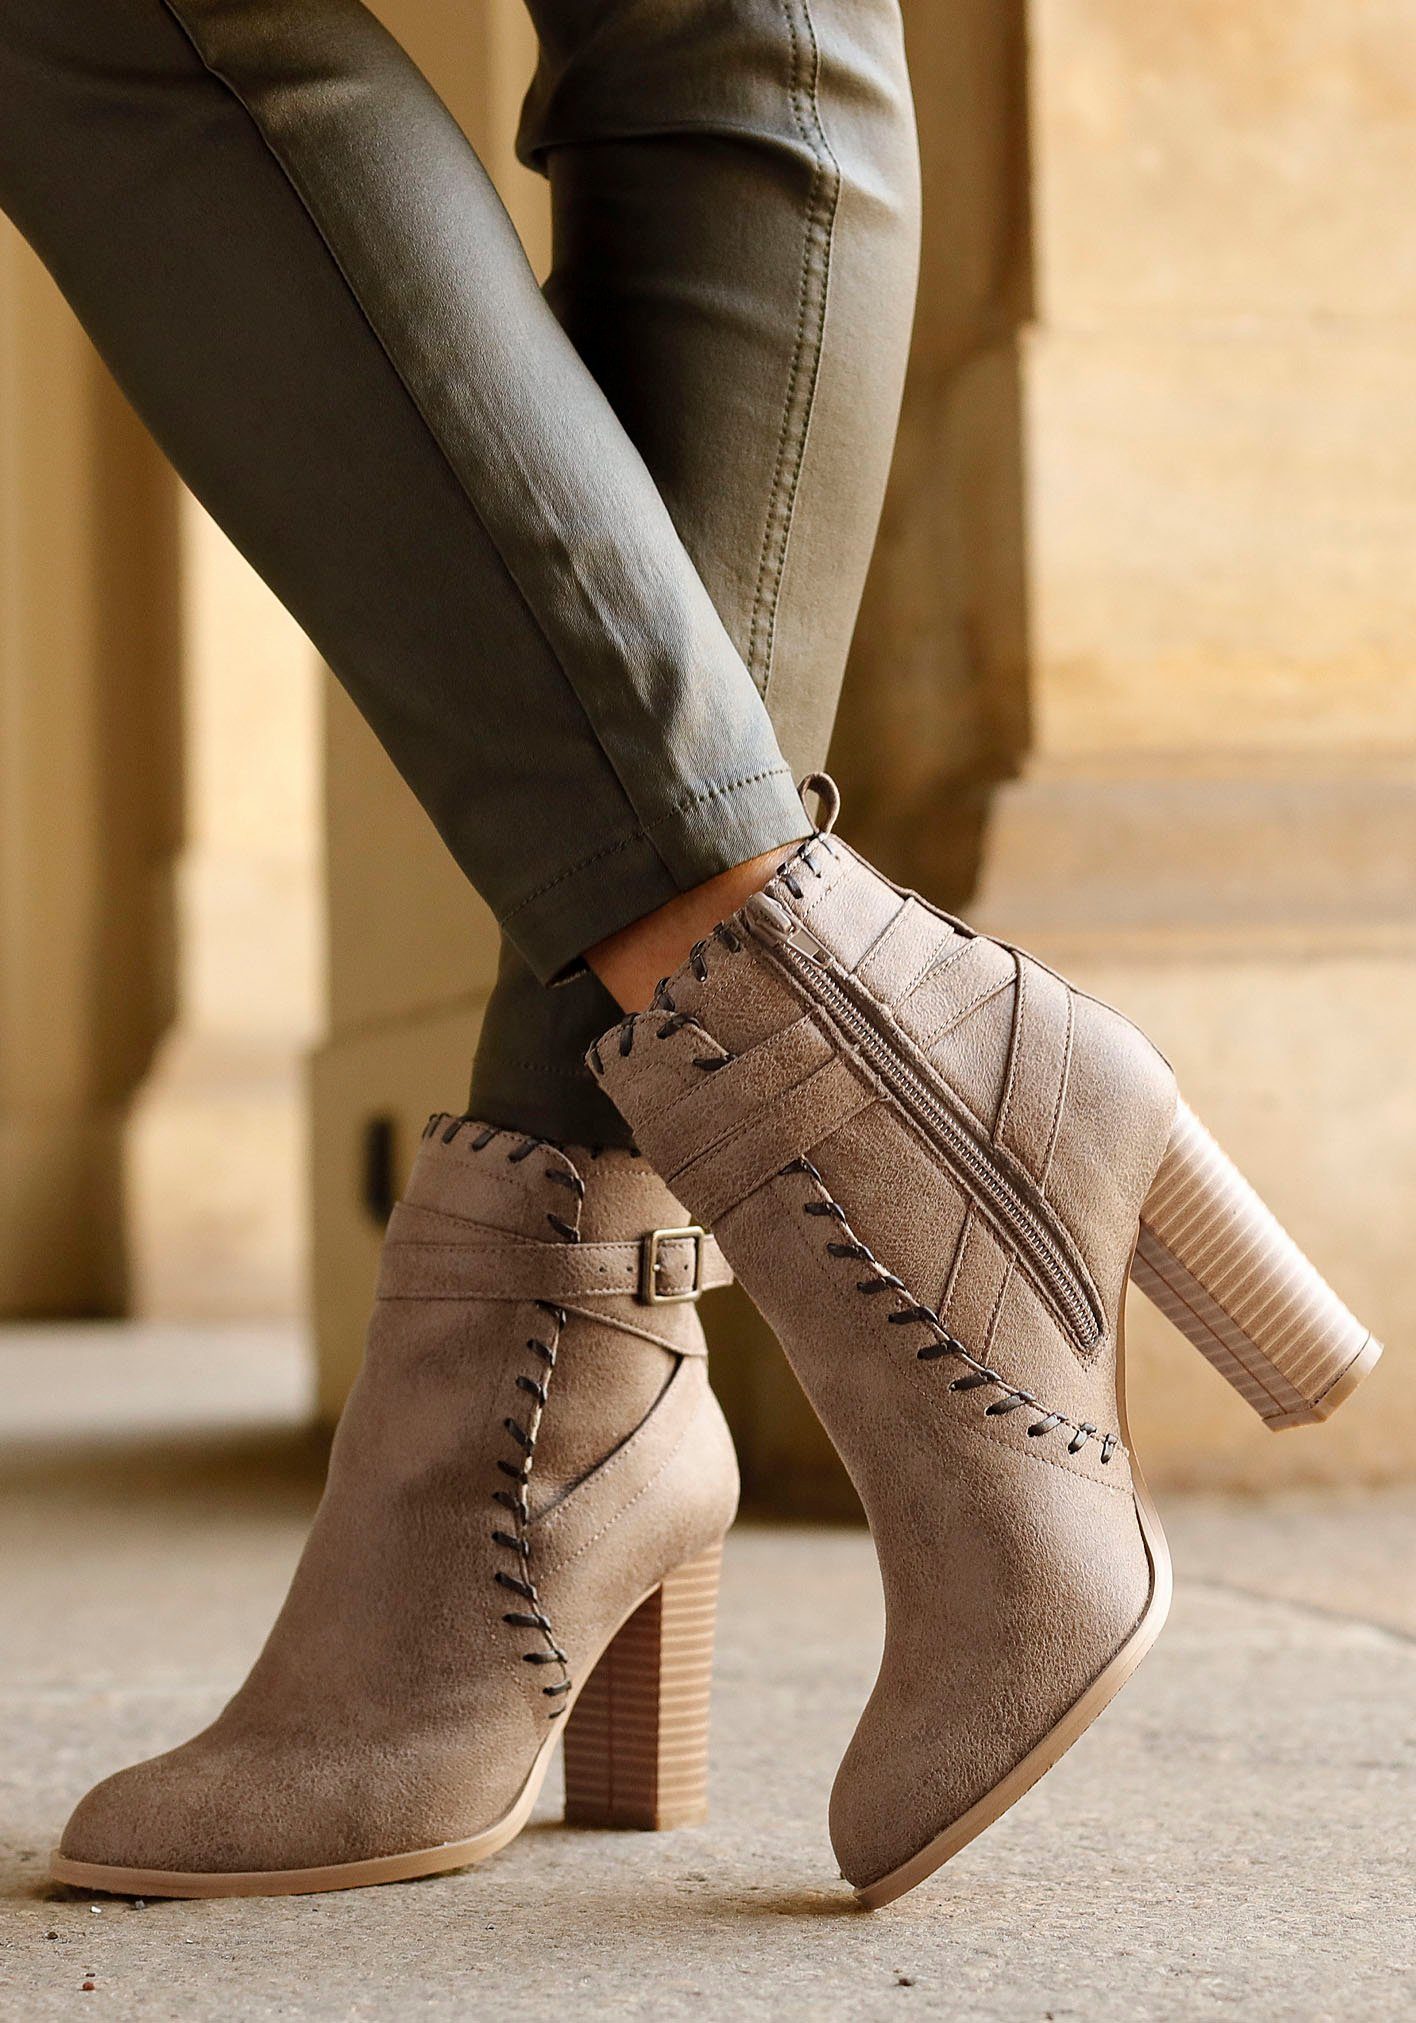 Vintage-Look Boot, Ankle camelfarben mit Blockabsatz, im Stiefel LASCANA High-Heel-Stiefelette bequemen